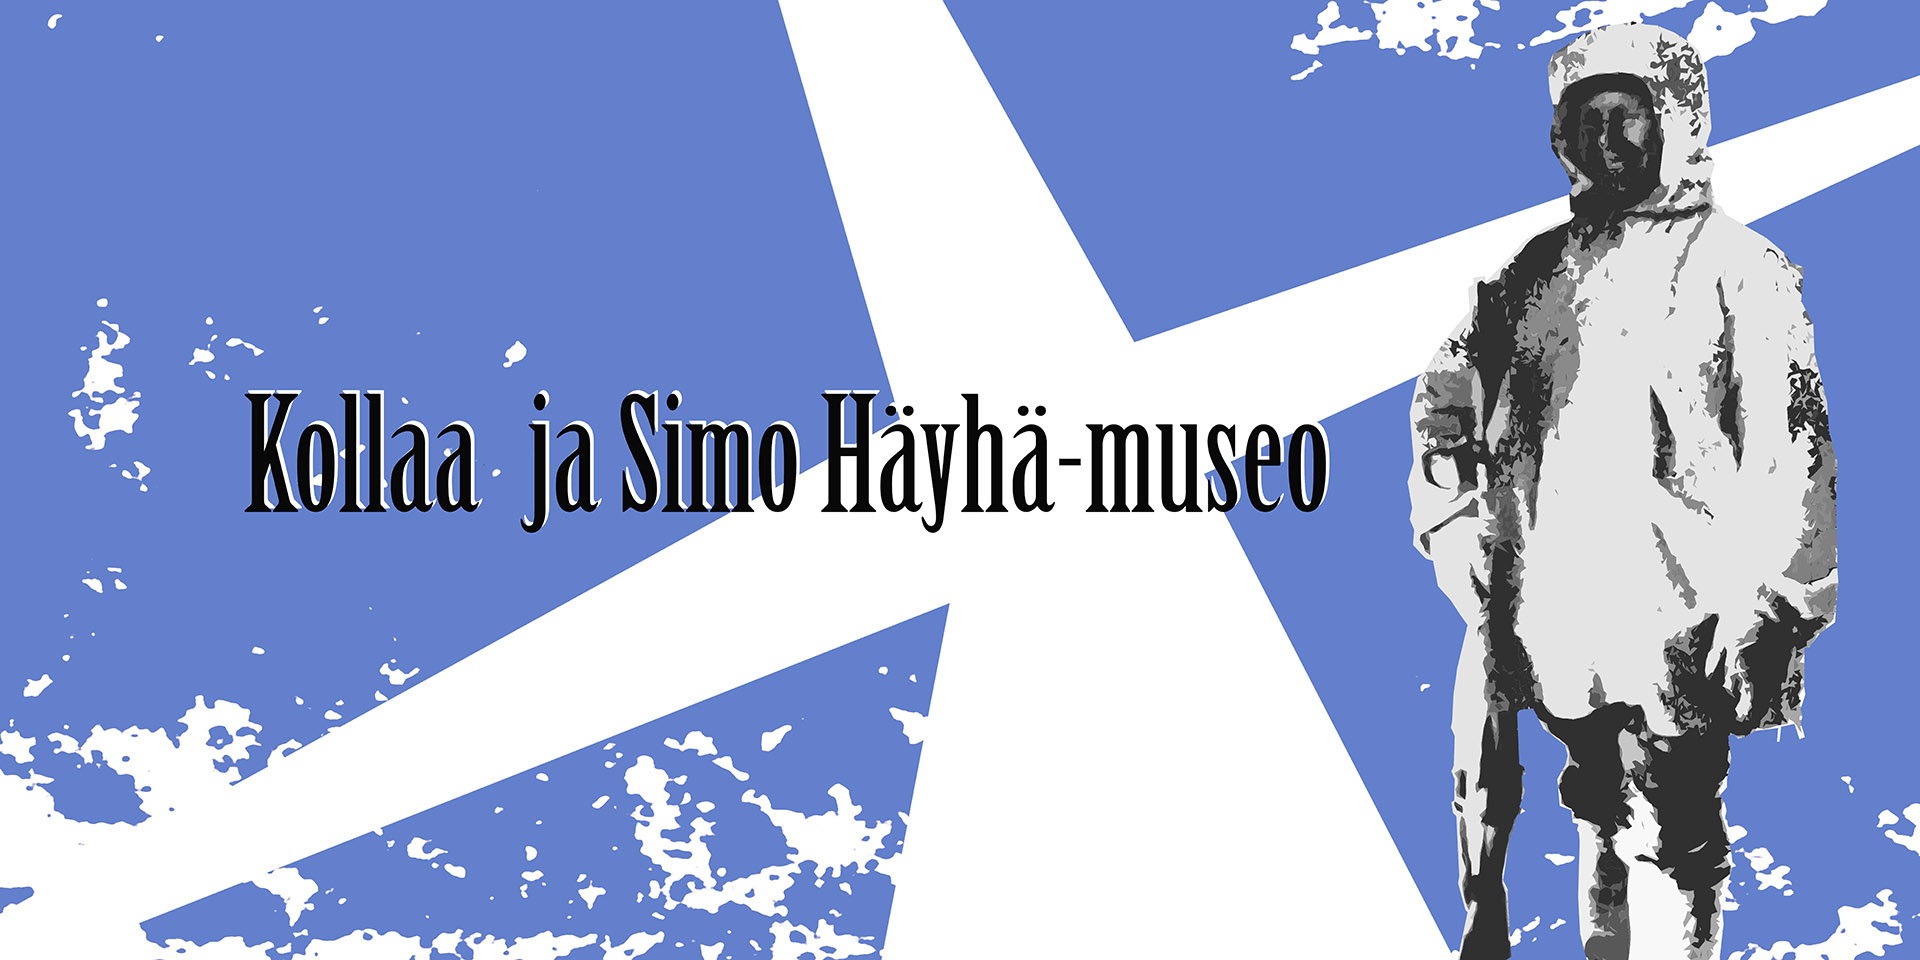 www.kollaa-simohayha-museo.fi